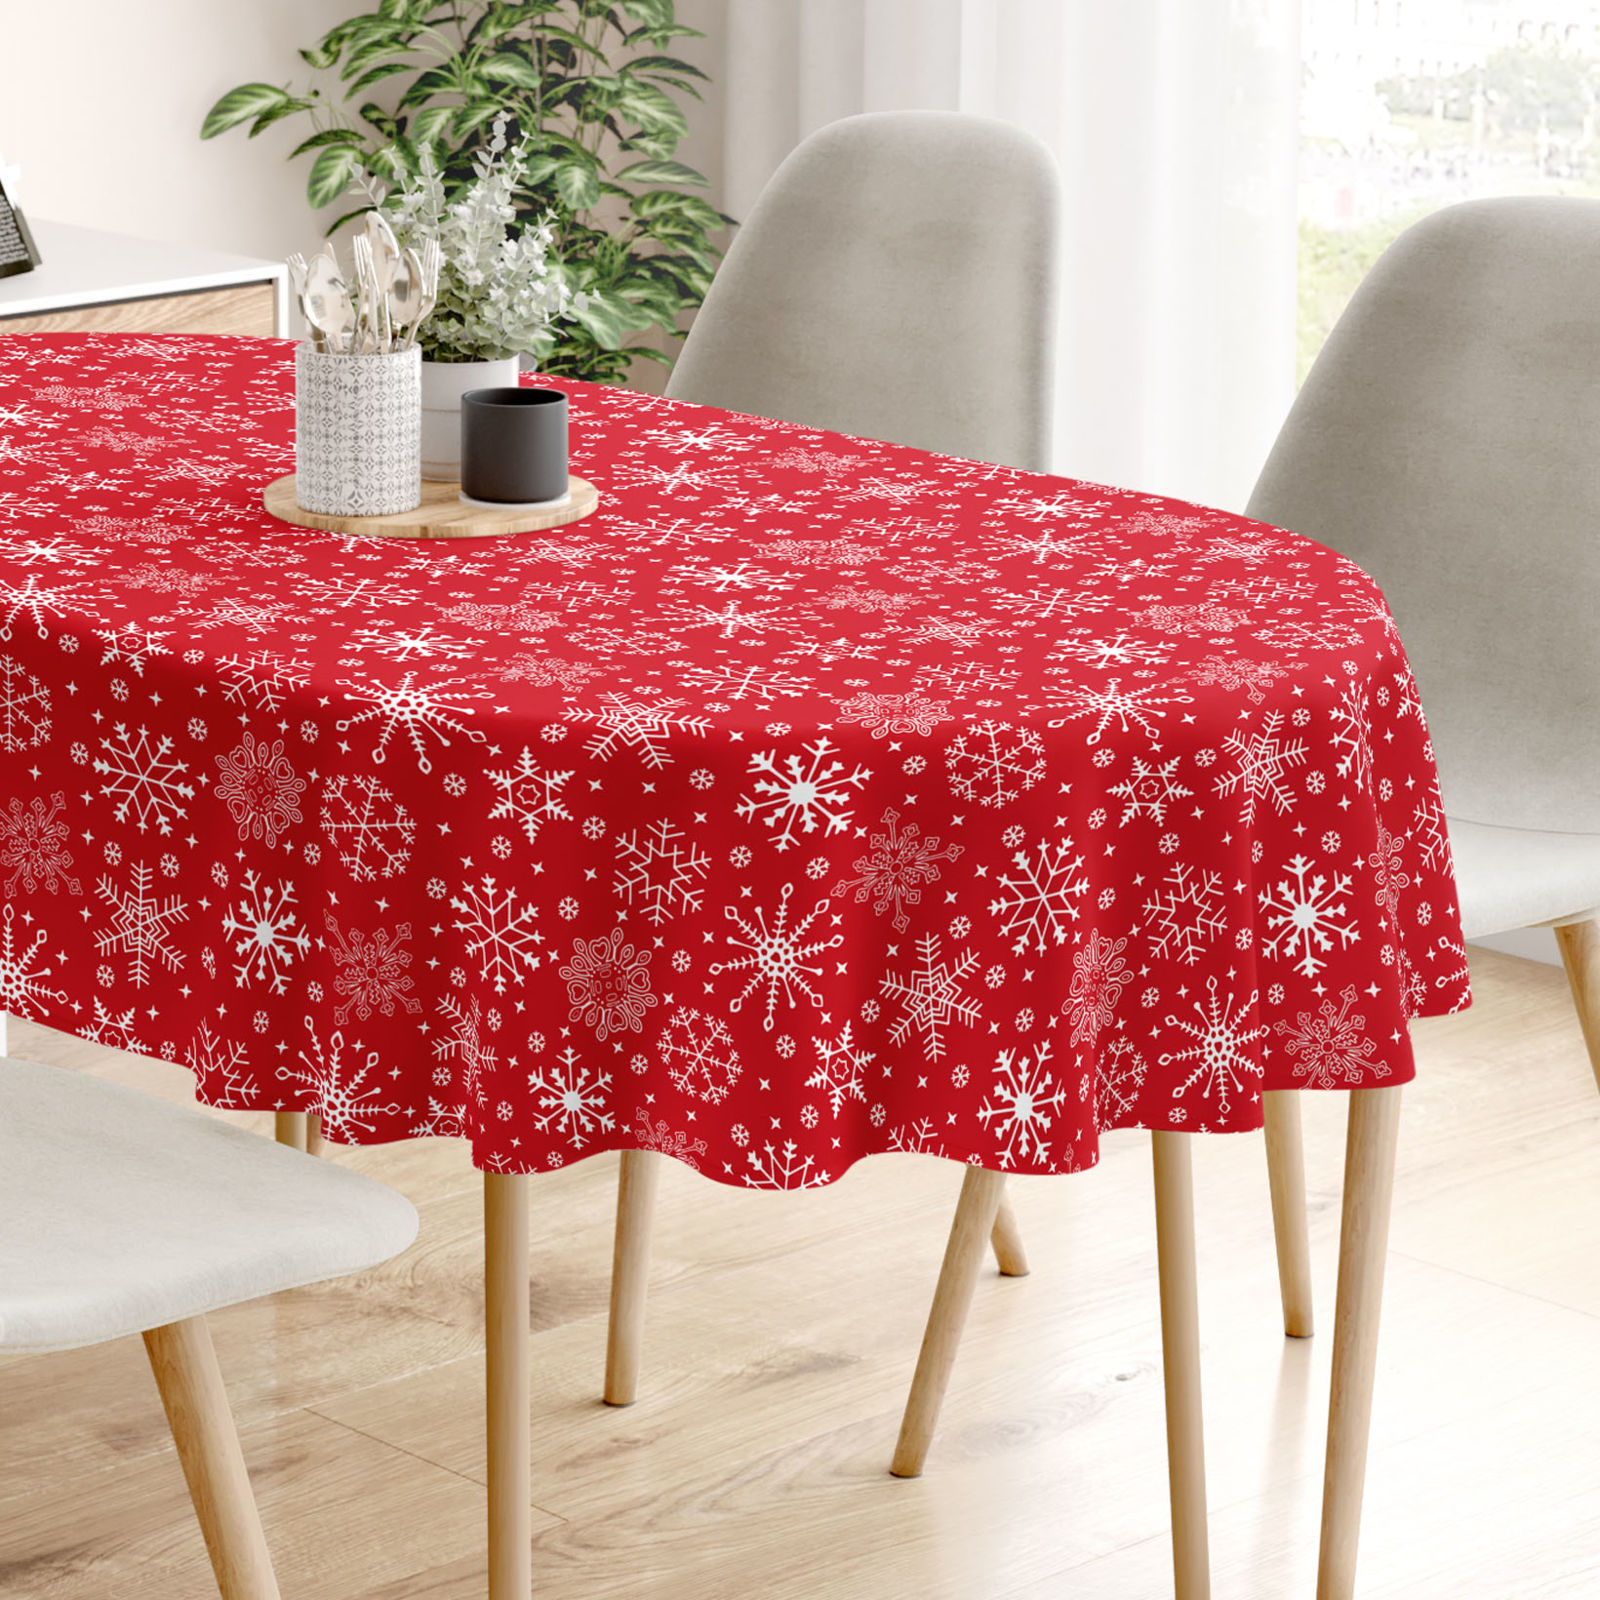 Karácsonyi pamut asztalterítő - hópihék piros alapon - ovális